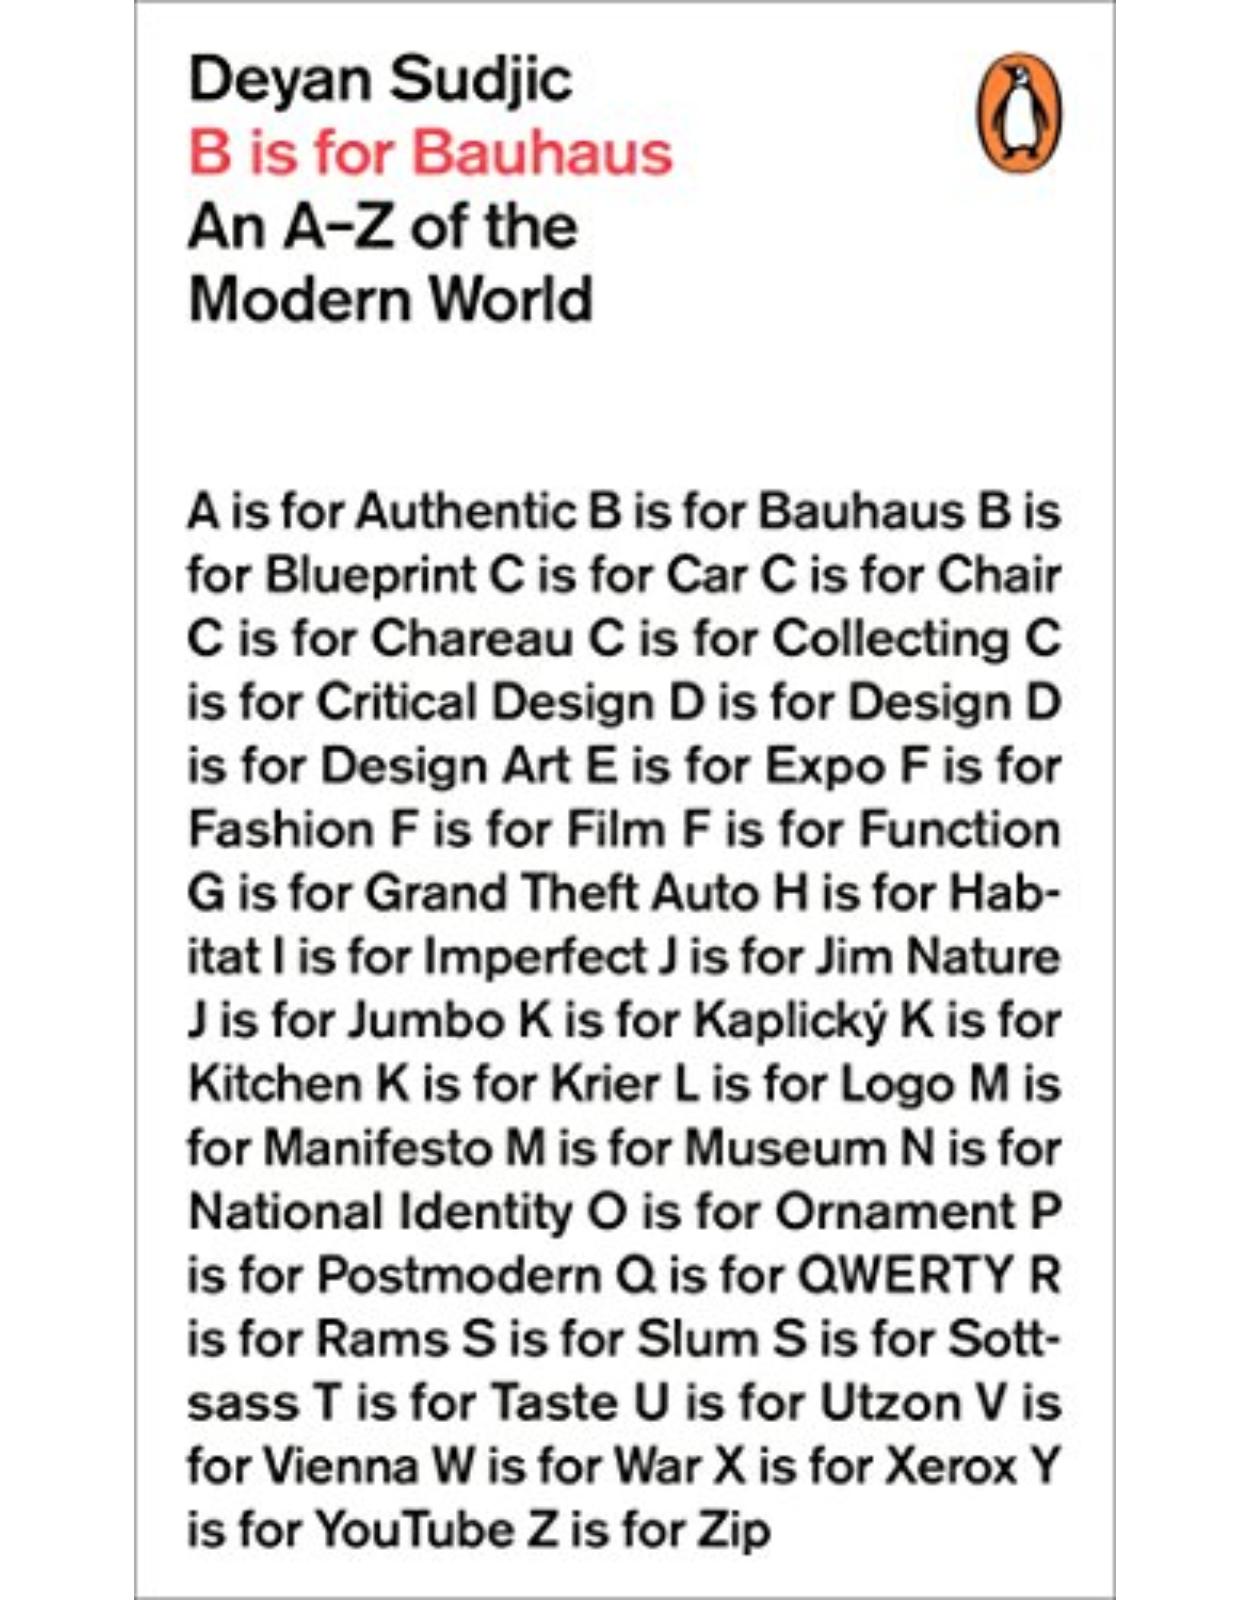 B is for Bauhaus: An A-Z of the Modern World